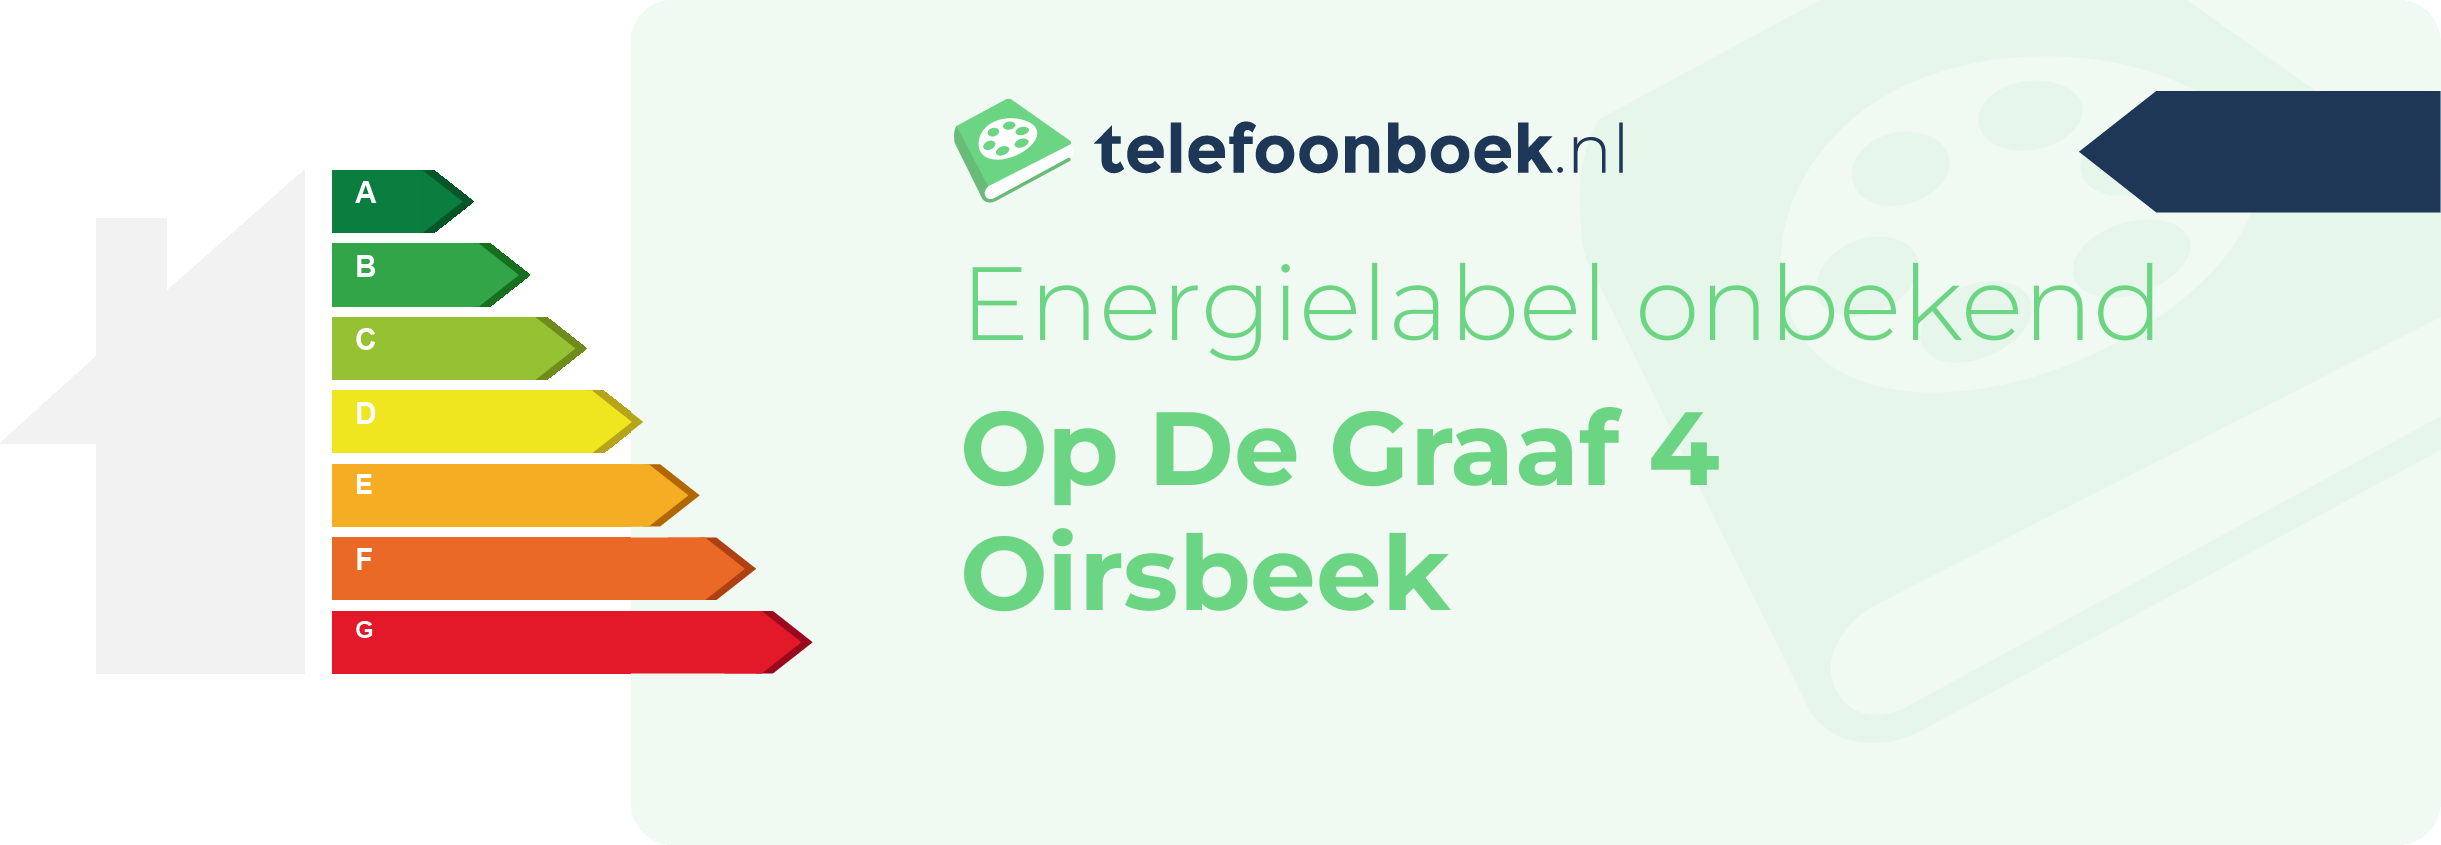 Energielabel Op De Graaf 4 Oirsbeek